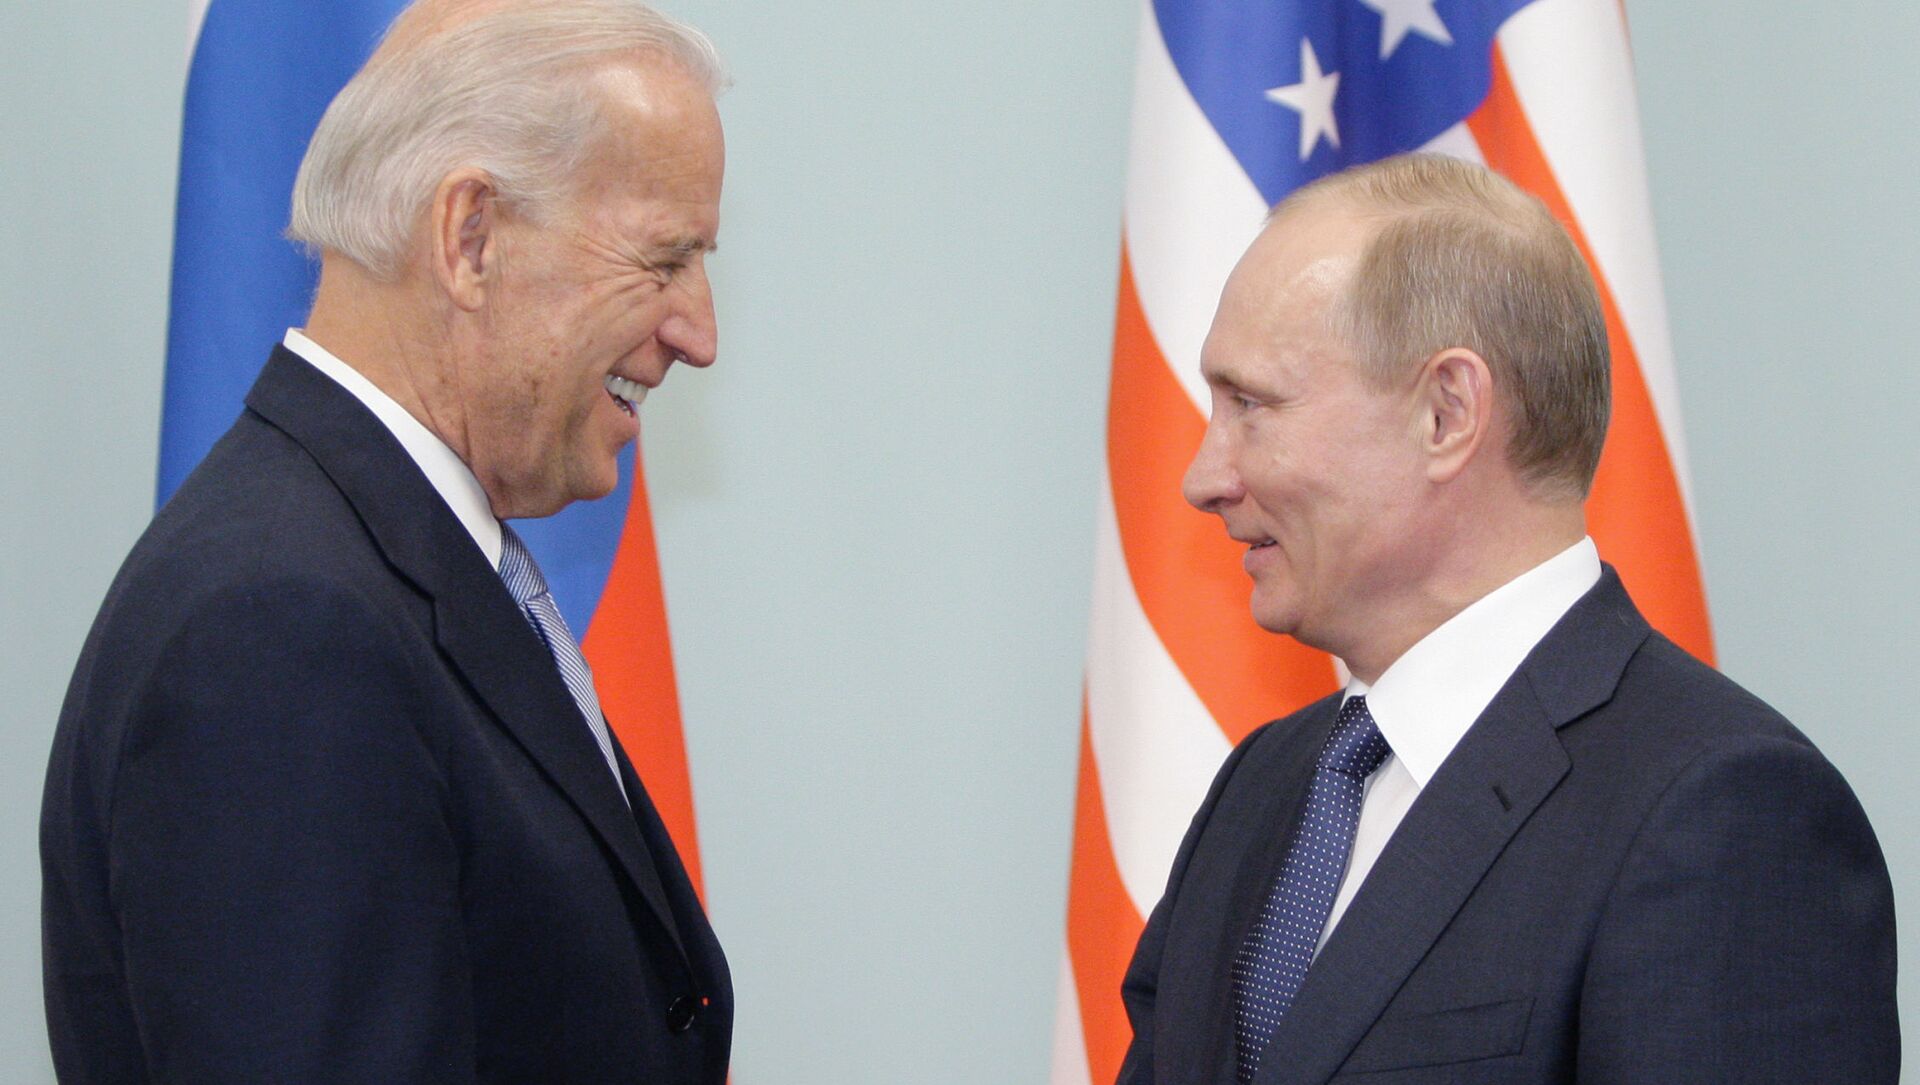 Susret Putina i Bajdena u Moskvi 2011. godine  - Sputnik Srbija, 1920, 16.04.2021